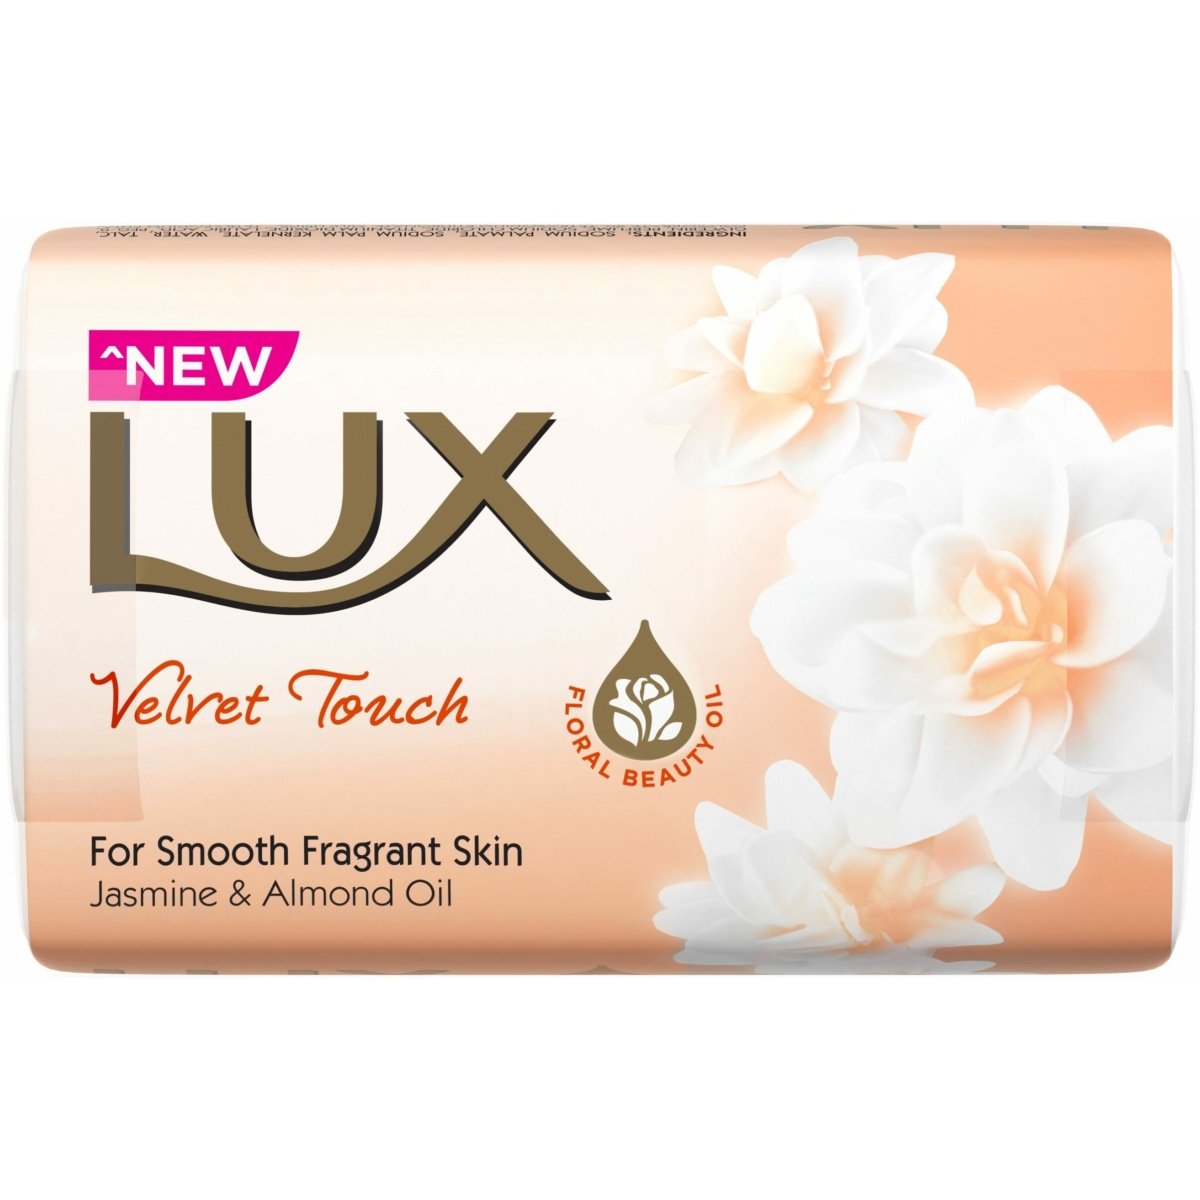 Lux Velvet Touch Soap Bar 150g (Pack of 3)